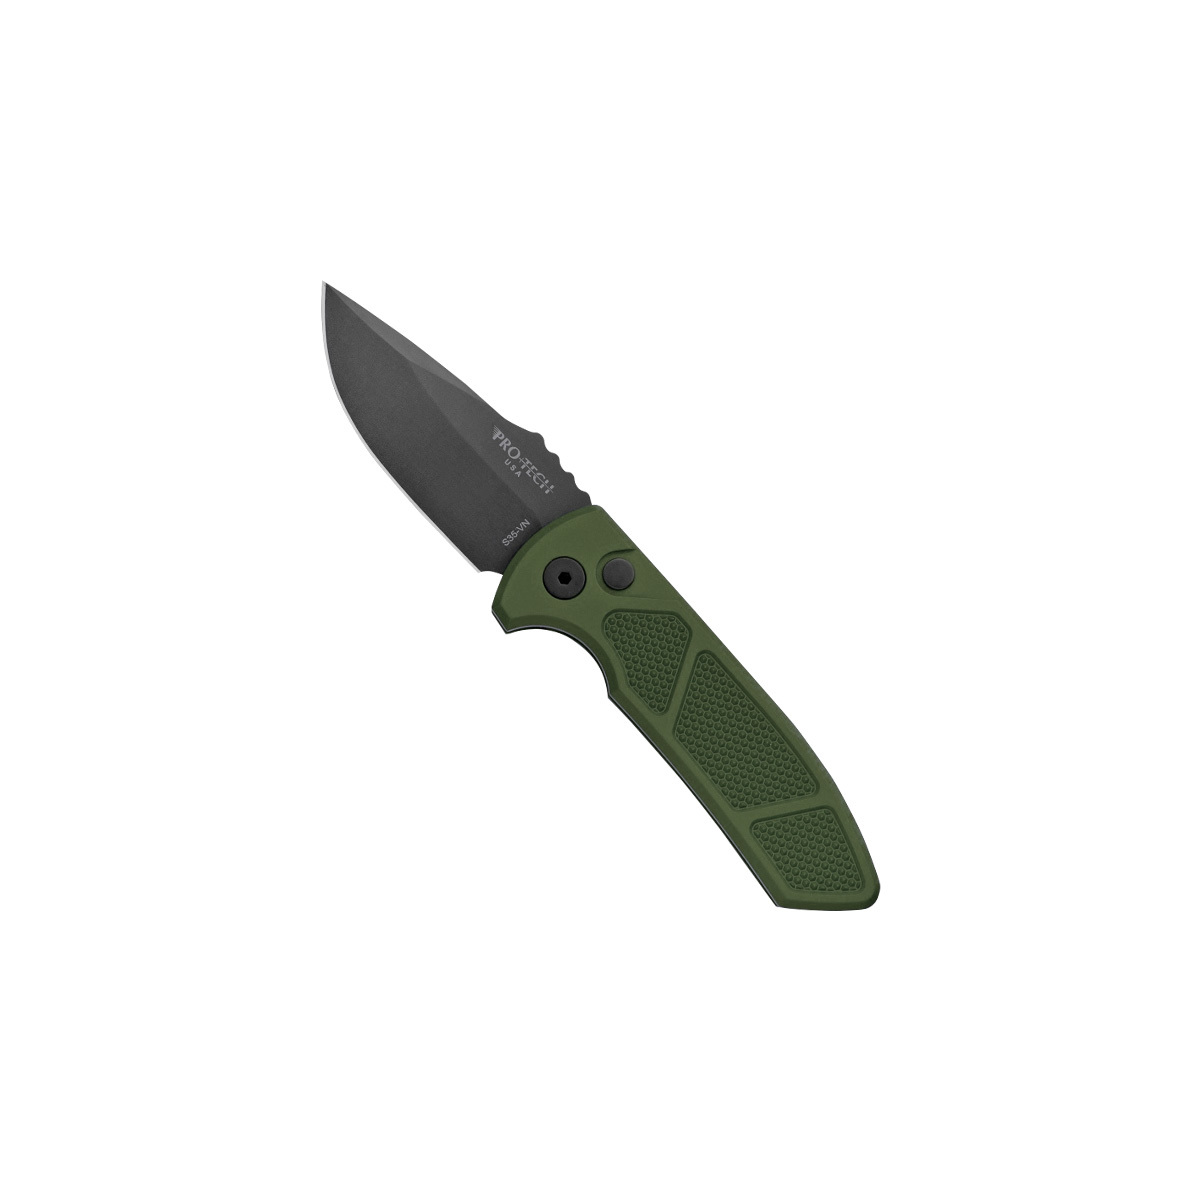 Автоматический складной нож Pro-Tech SBR, сталь S35VN, рукоять  зеленый алюминий